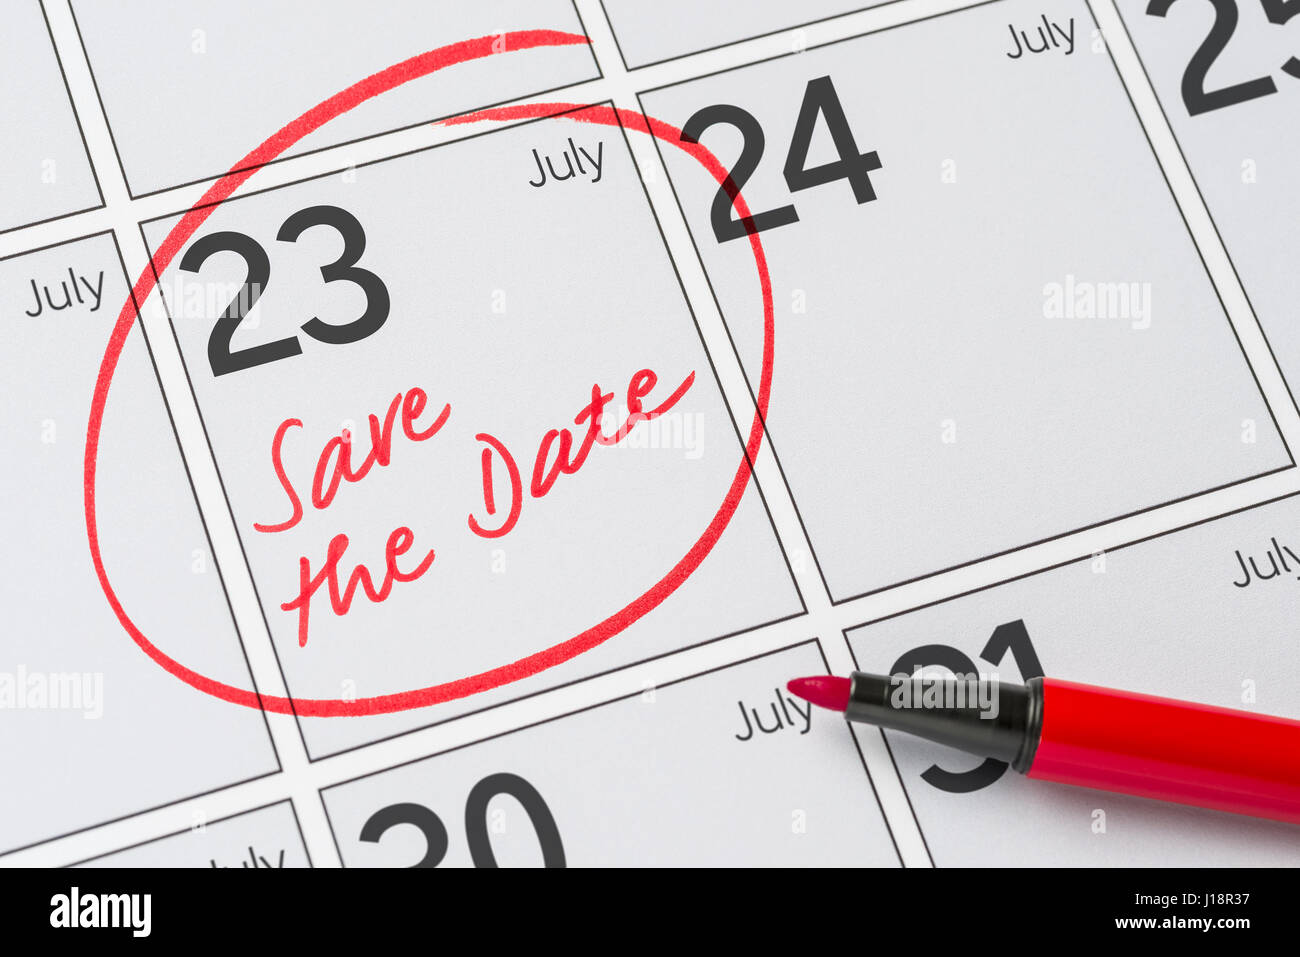 Enregistrer la date inscrite sur un calendrier - Juillet 23 Banque D'Images